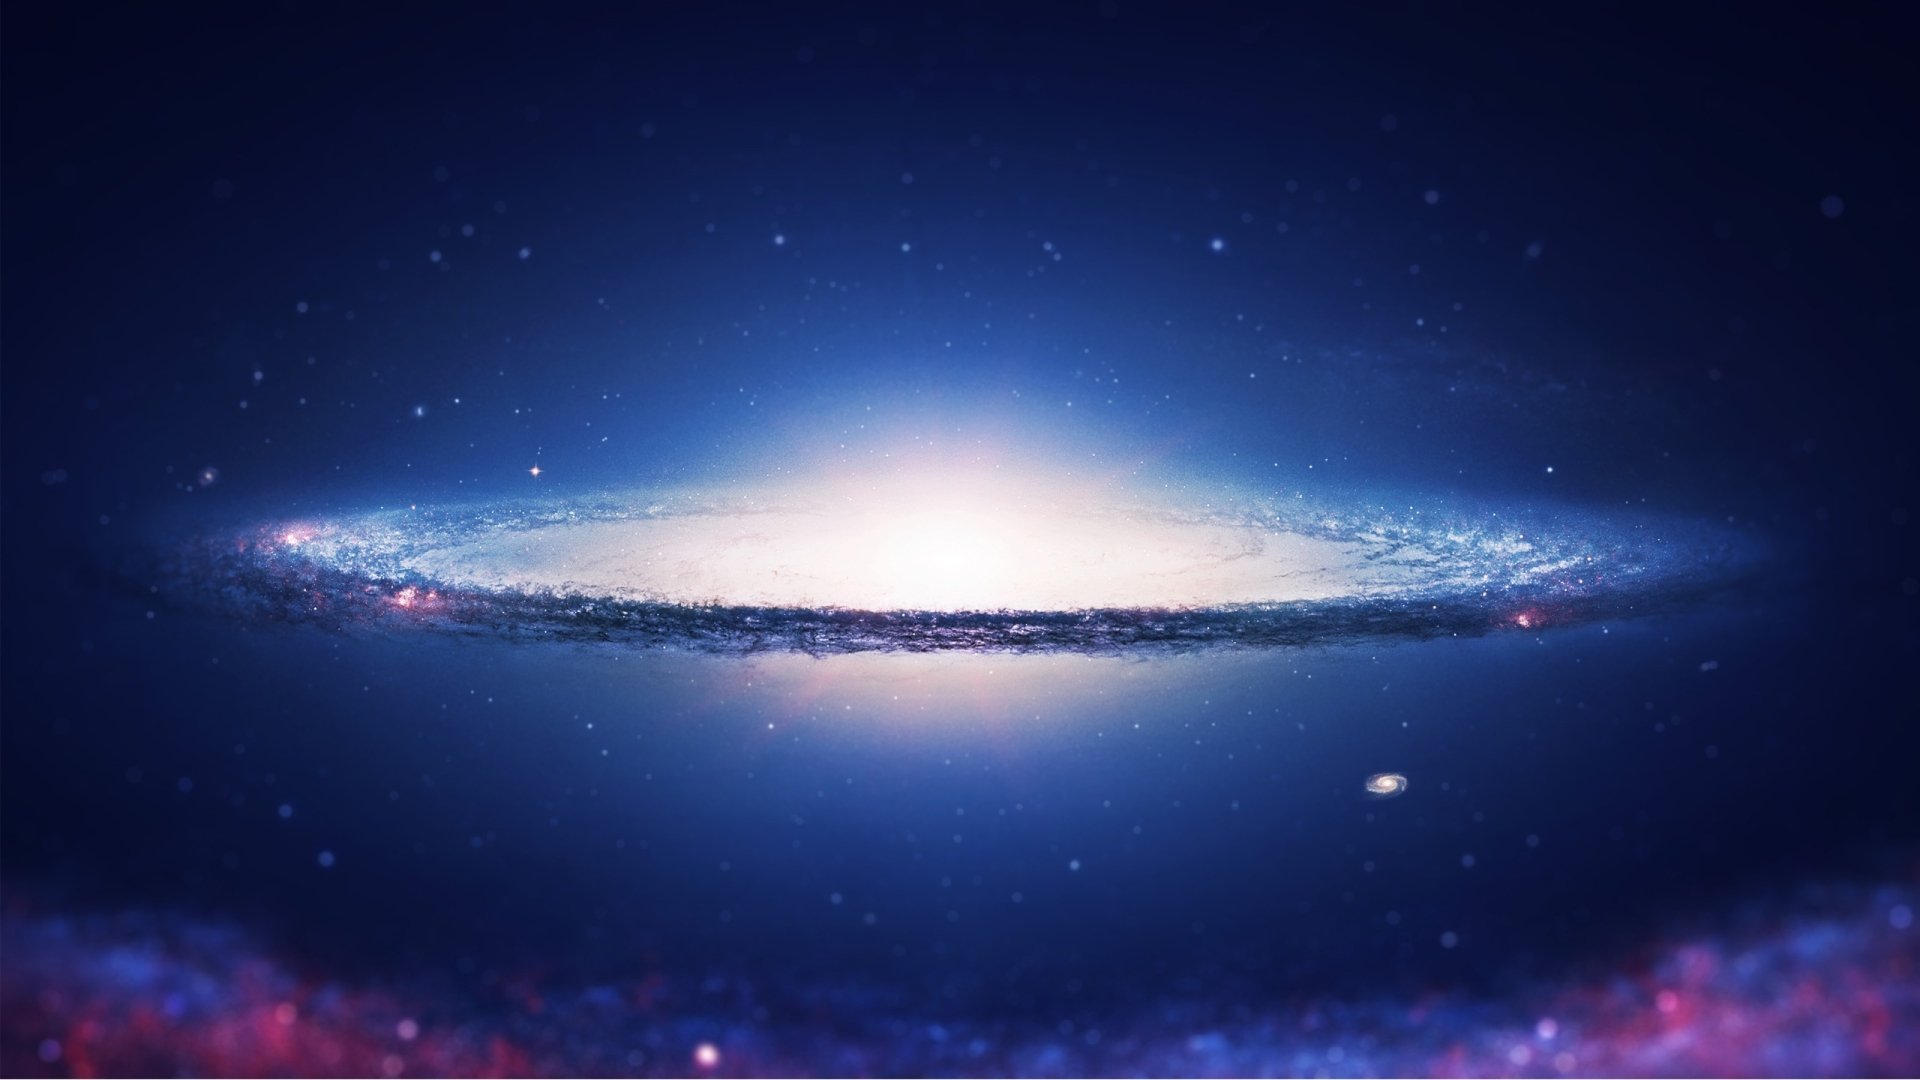 Với thiên thạch xoắn ốc, bạn sẽ được tận mắt chứng kiến một trong những hình ảnh đẹp nhất trong vũ trụ. Lắng nghe tiếng róc rách của không gian và cảm nhận tình cảm của những người đam mê thiên văn này. Đây sẽ là hành trình đầy ấn tượng và độc đáo.